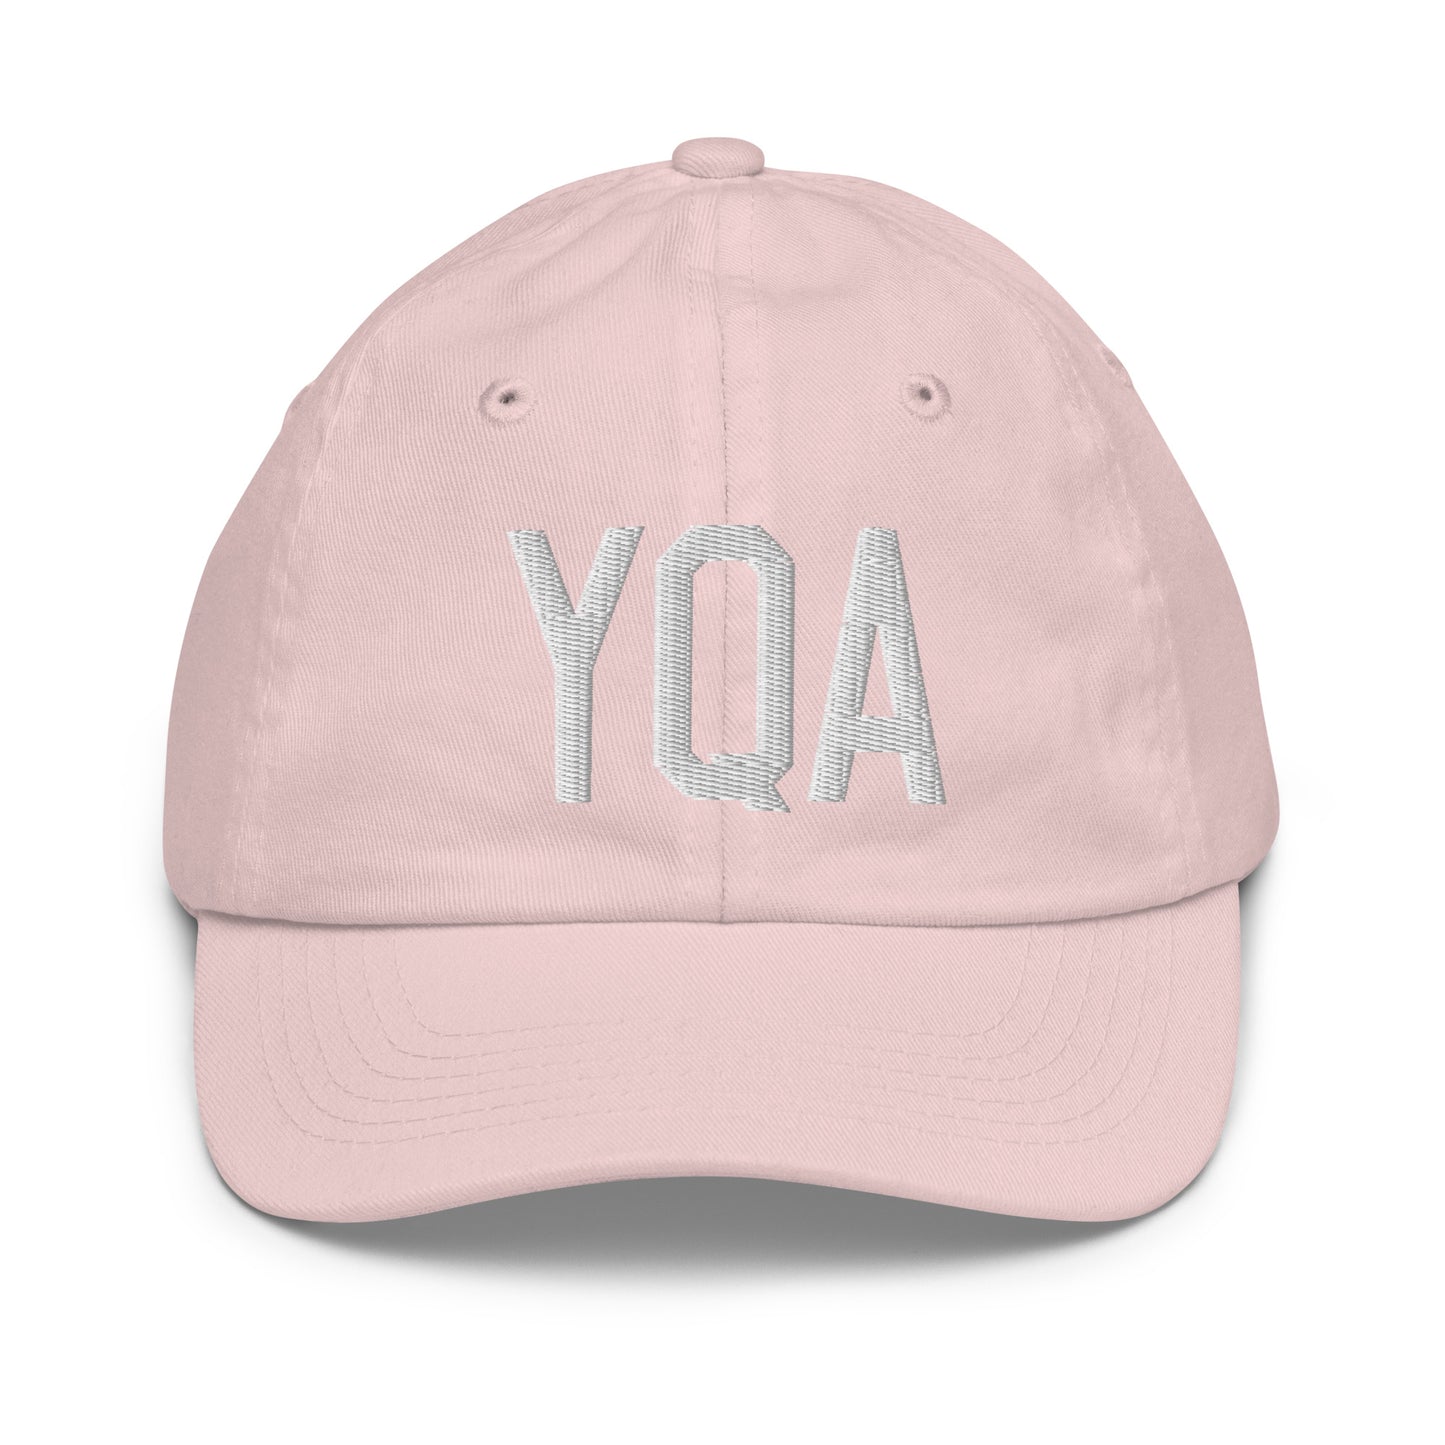 Airport Code Kid's Baseball Cap - White • YQA Muskoka • YHM Designs - Image 31